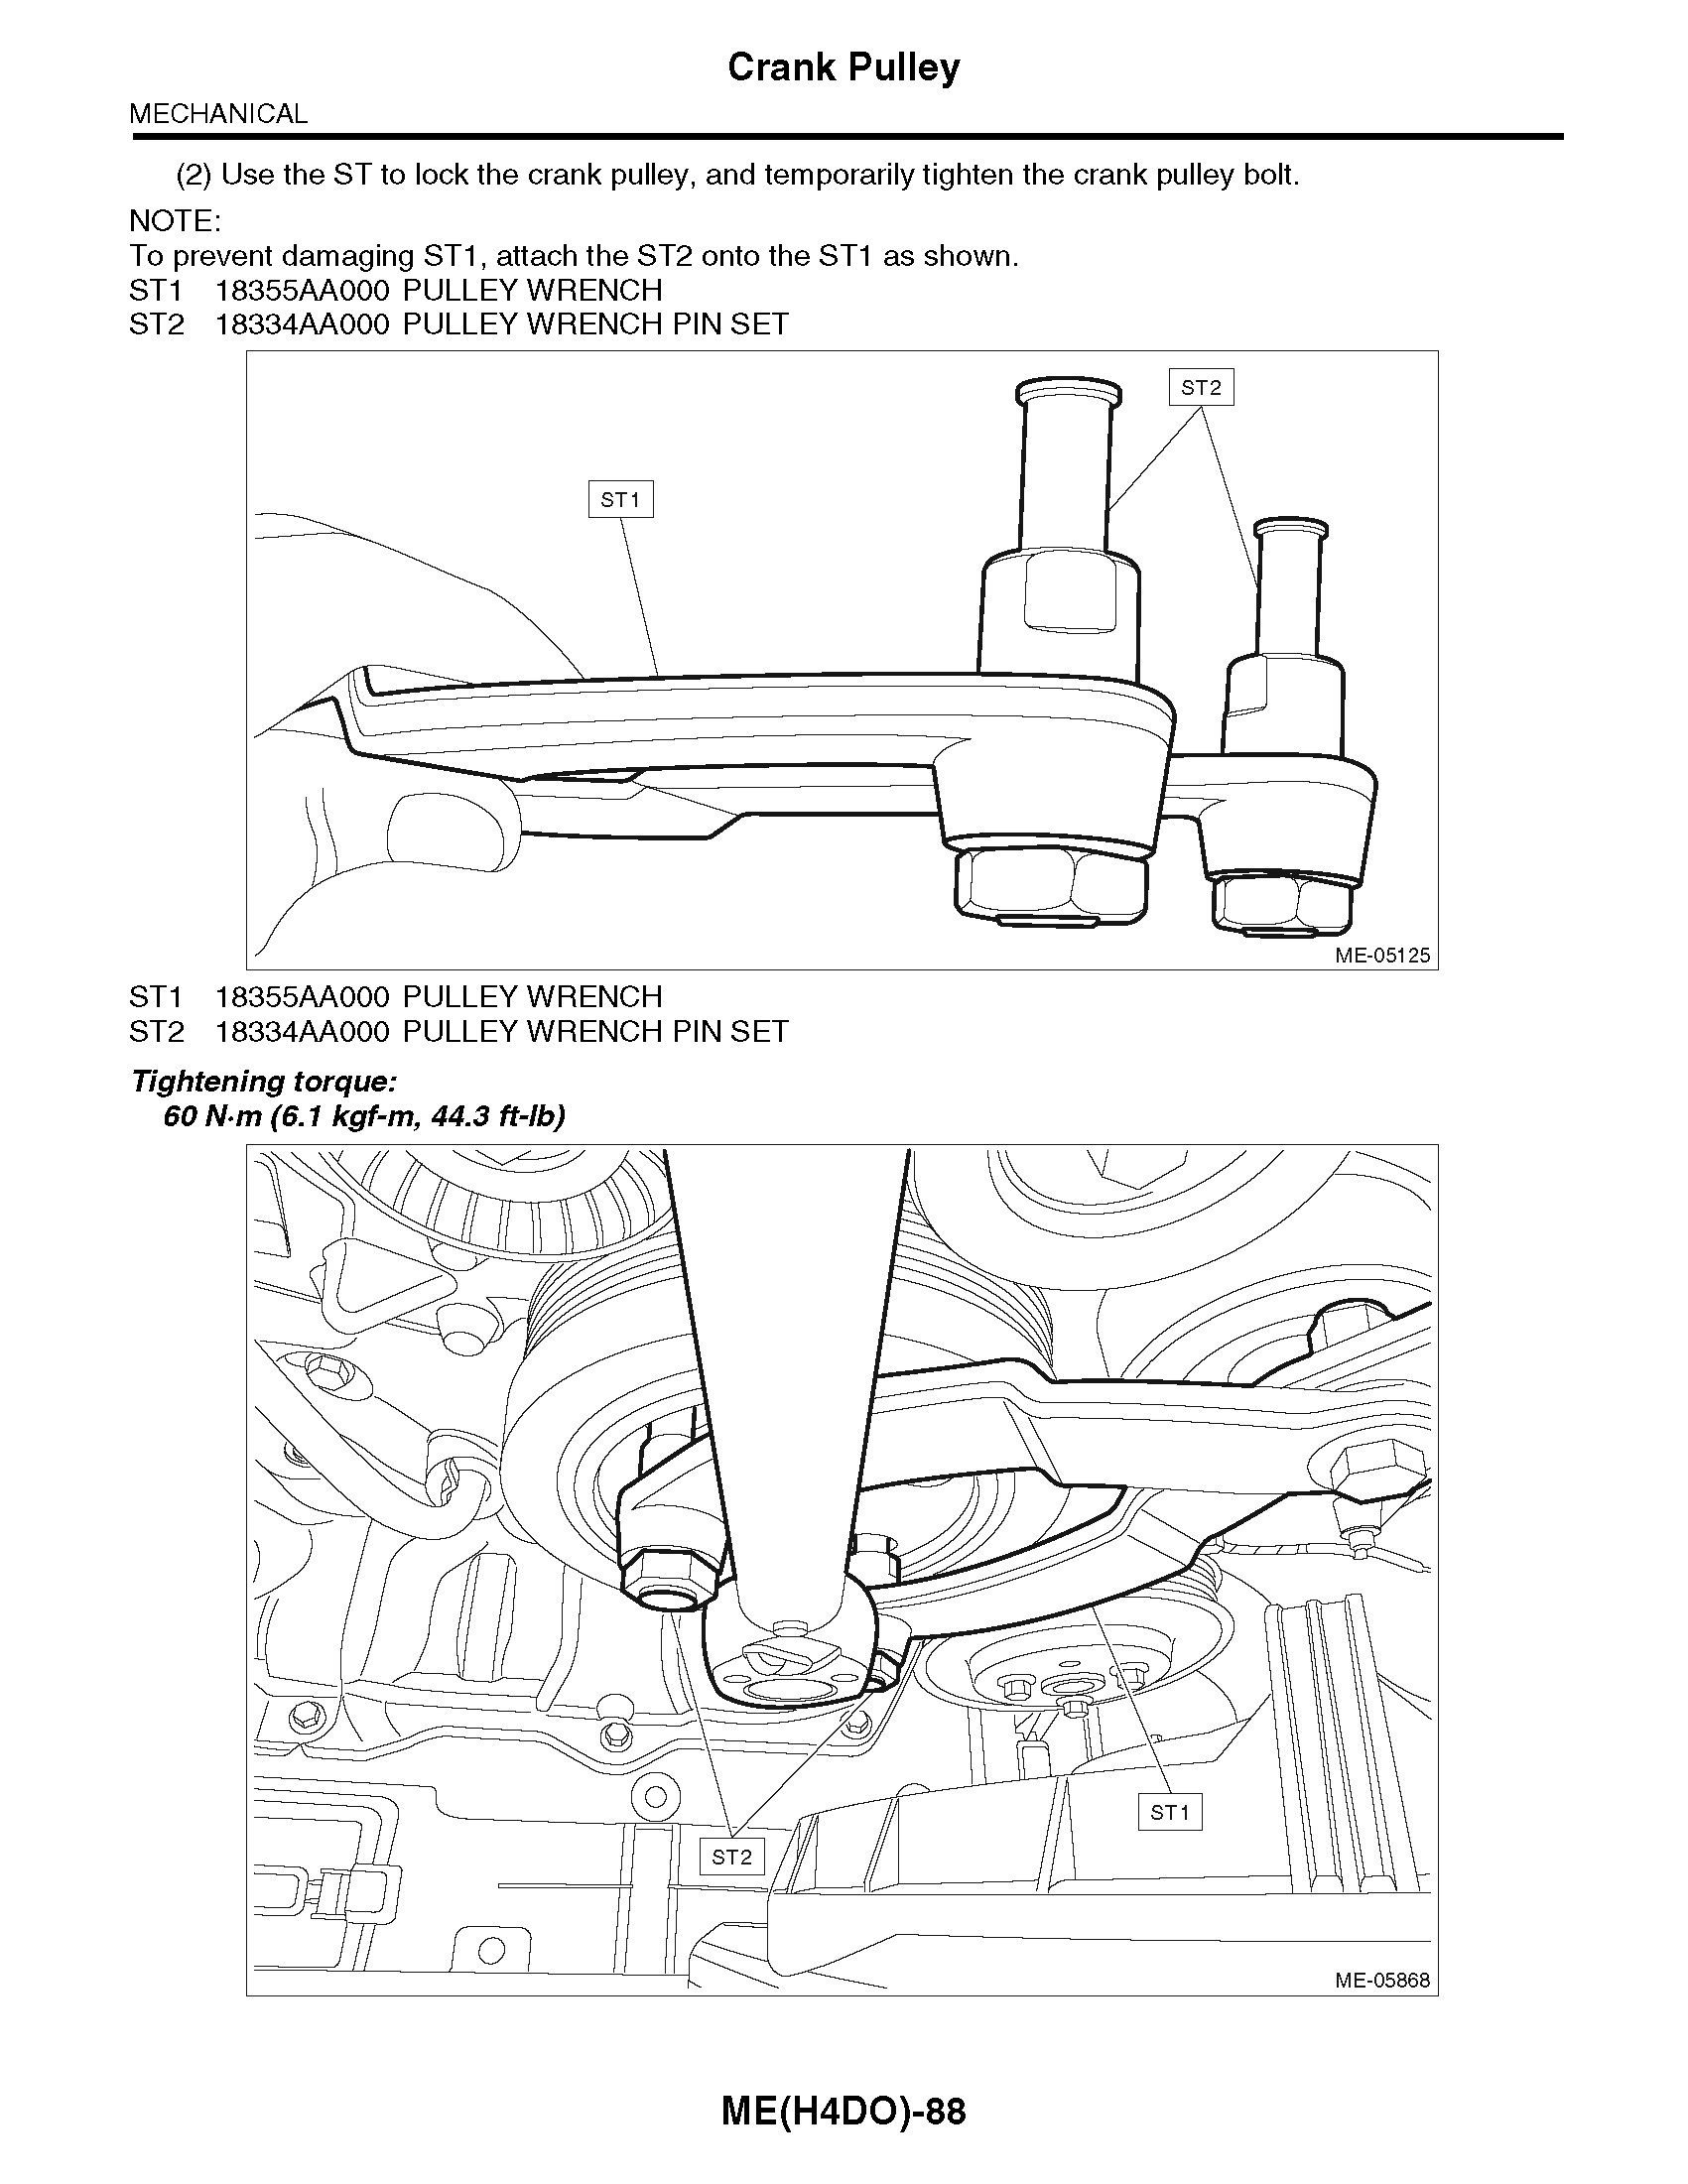 2013 Subaru Impreza & XV Crosstrek Repair Manual, Crank Pulley